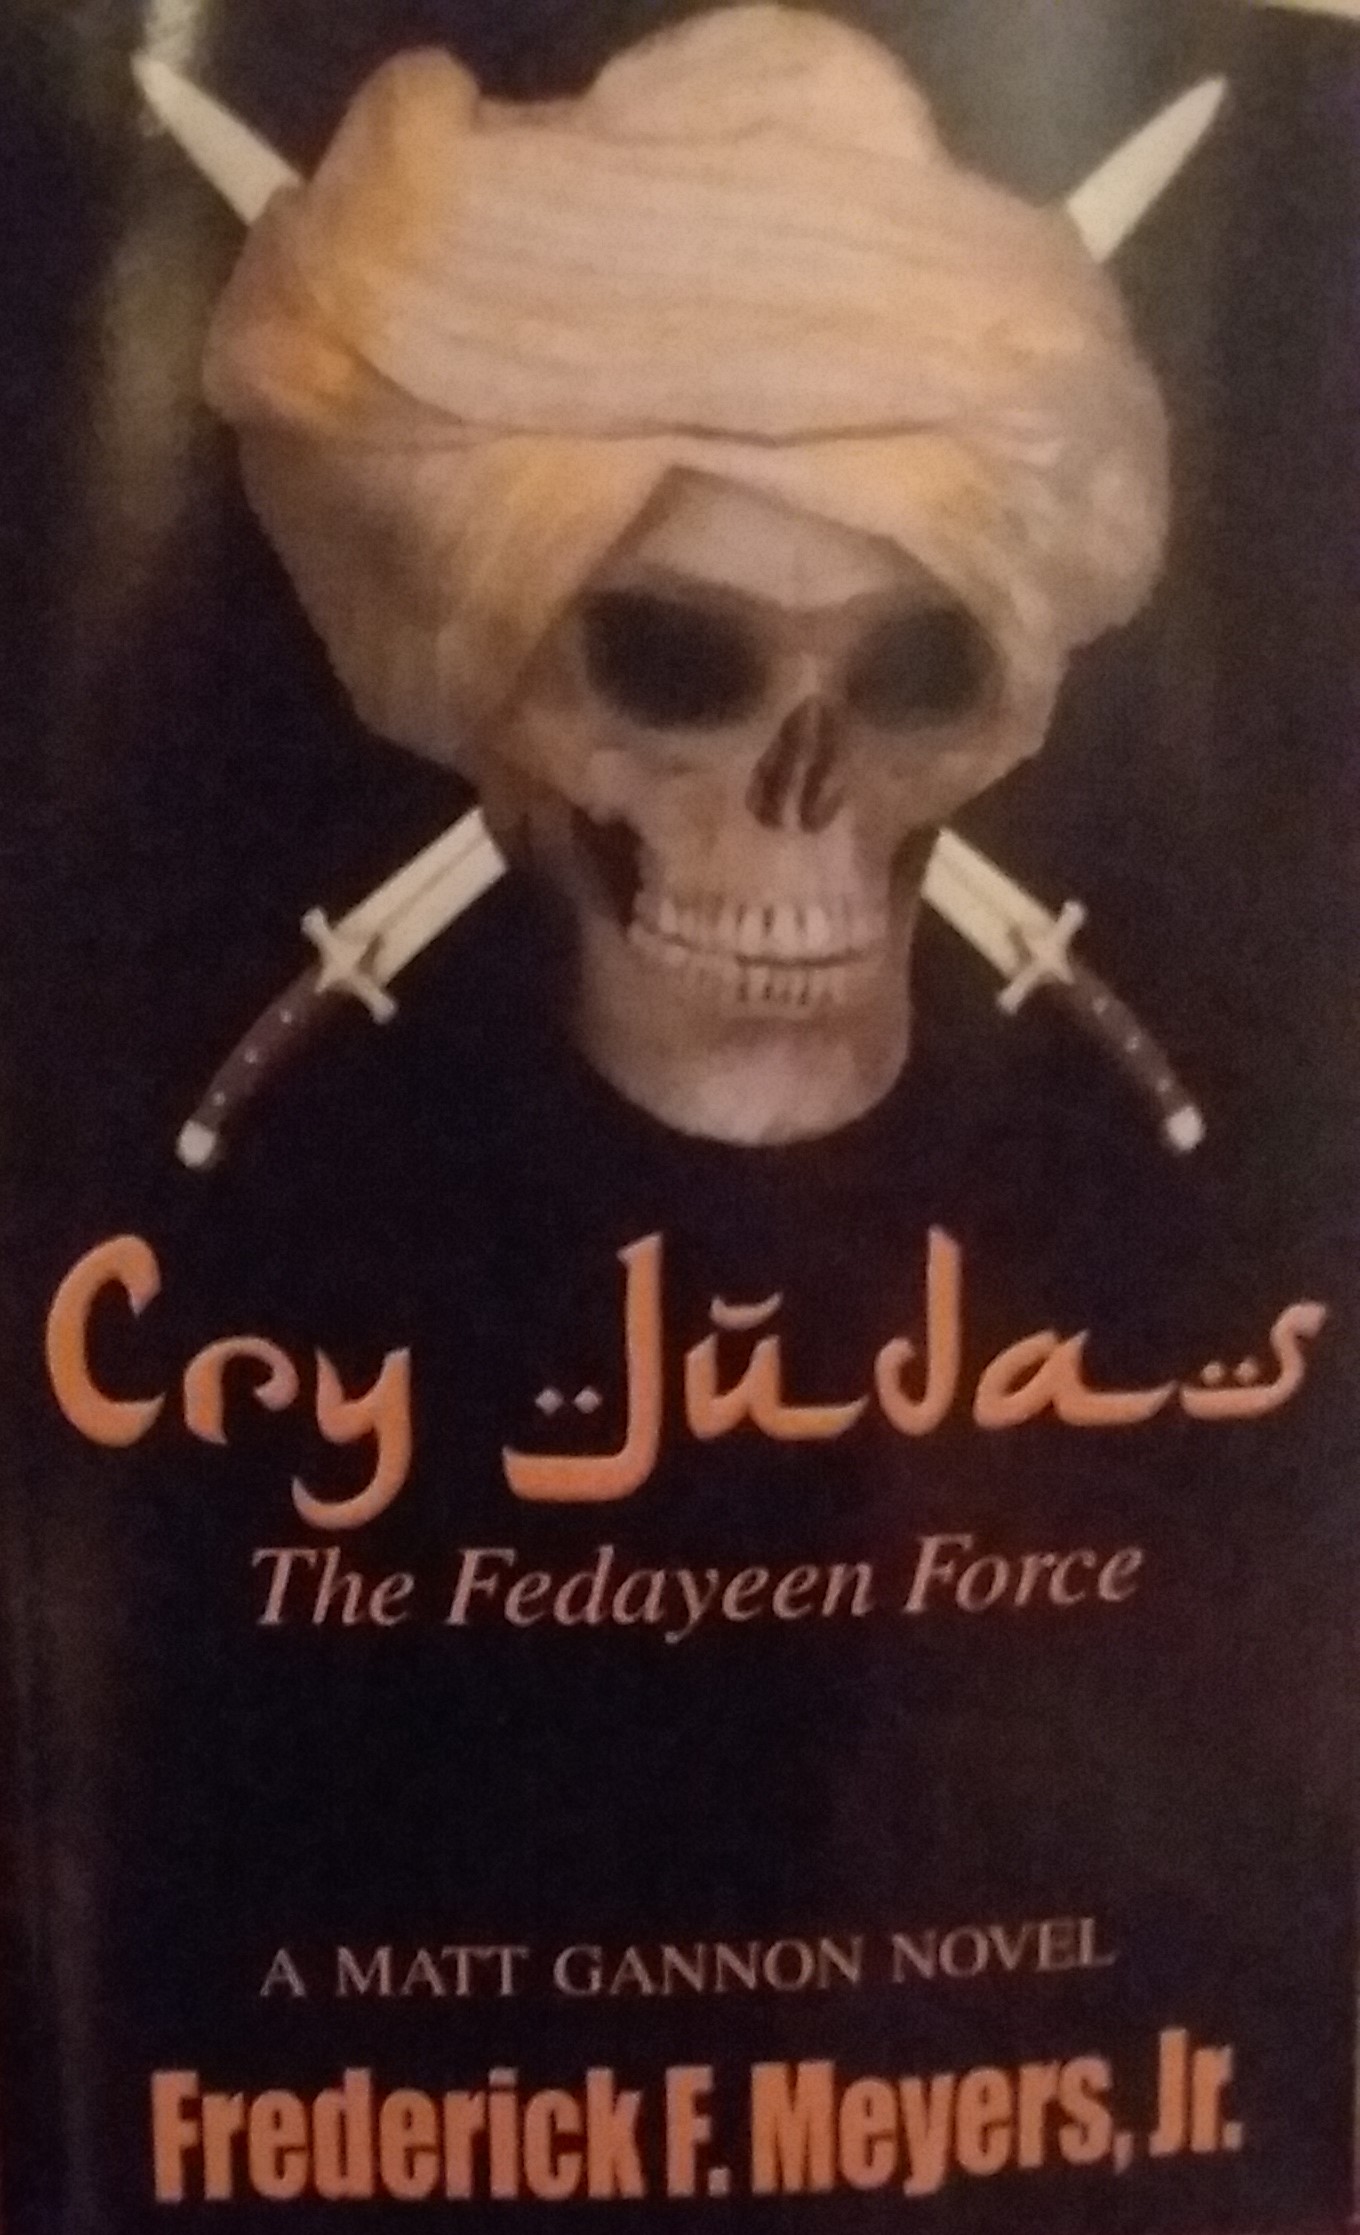 Cry Judas